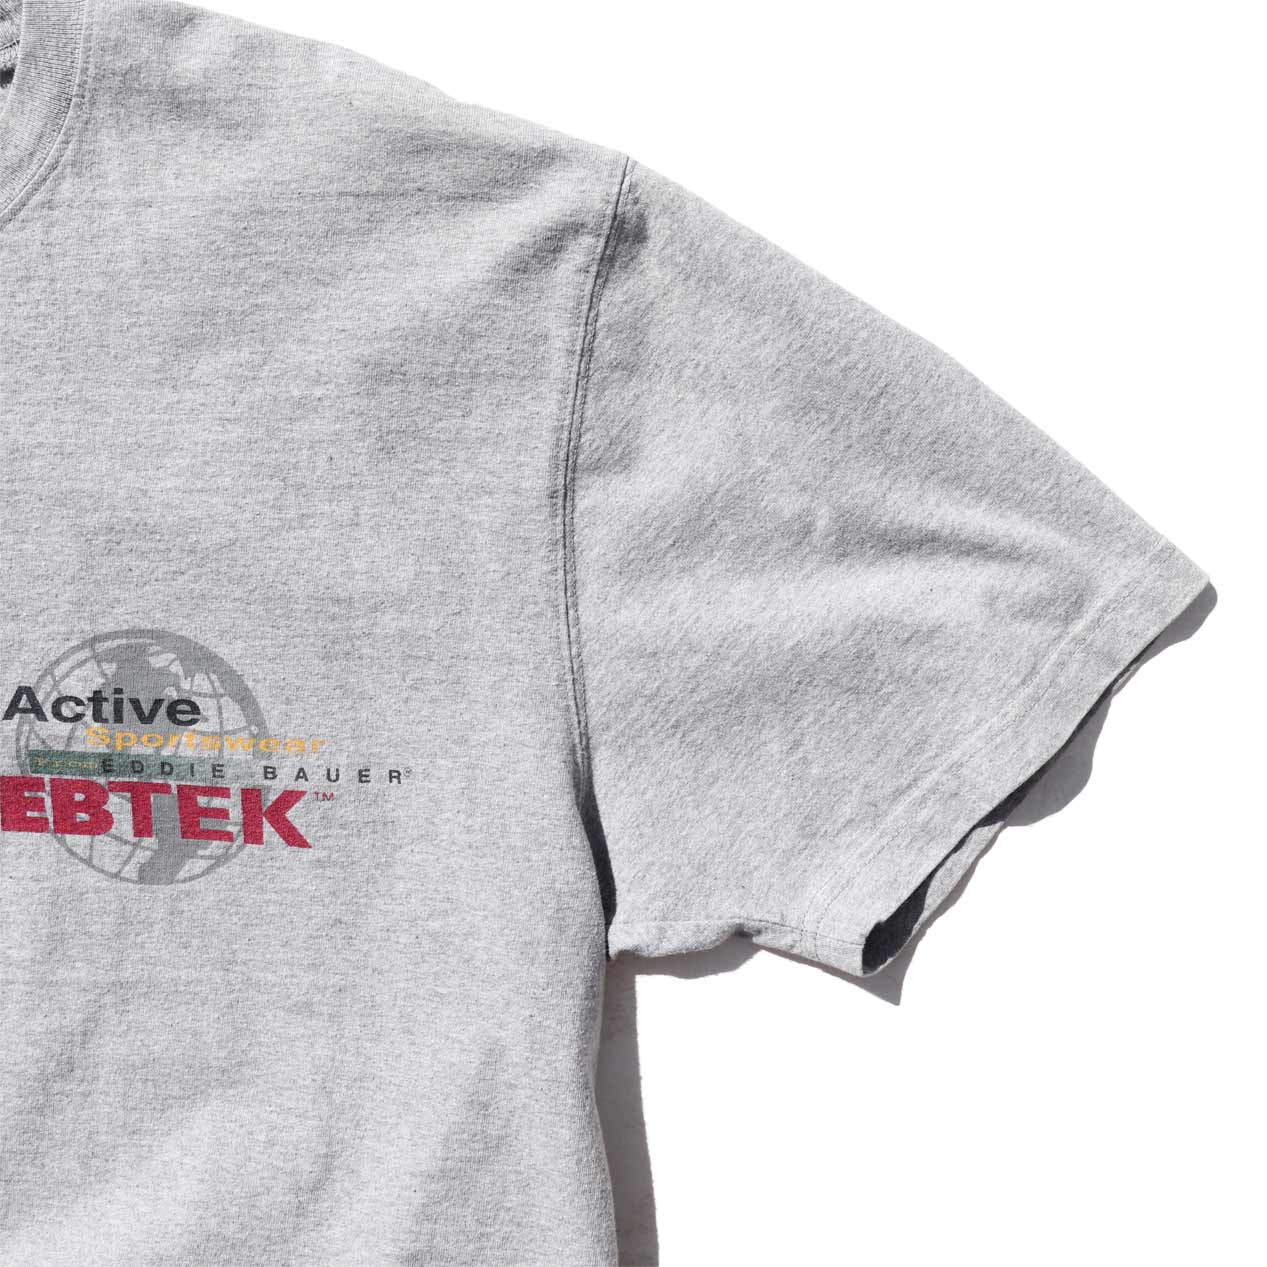 POST JUNK / 90's EBTEK EDDIE BAUER T-Shirt Made In Canada [L]